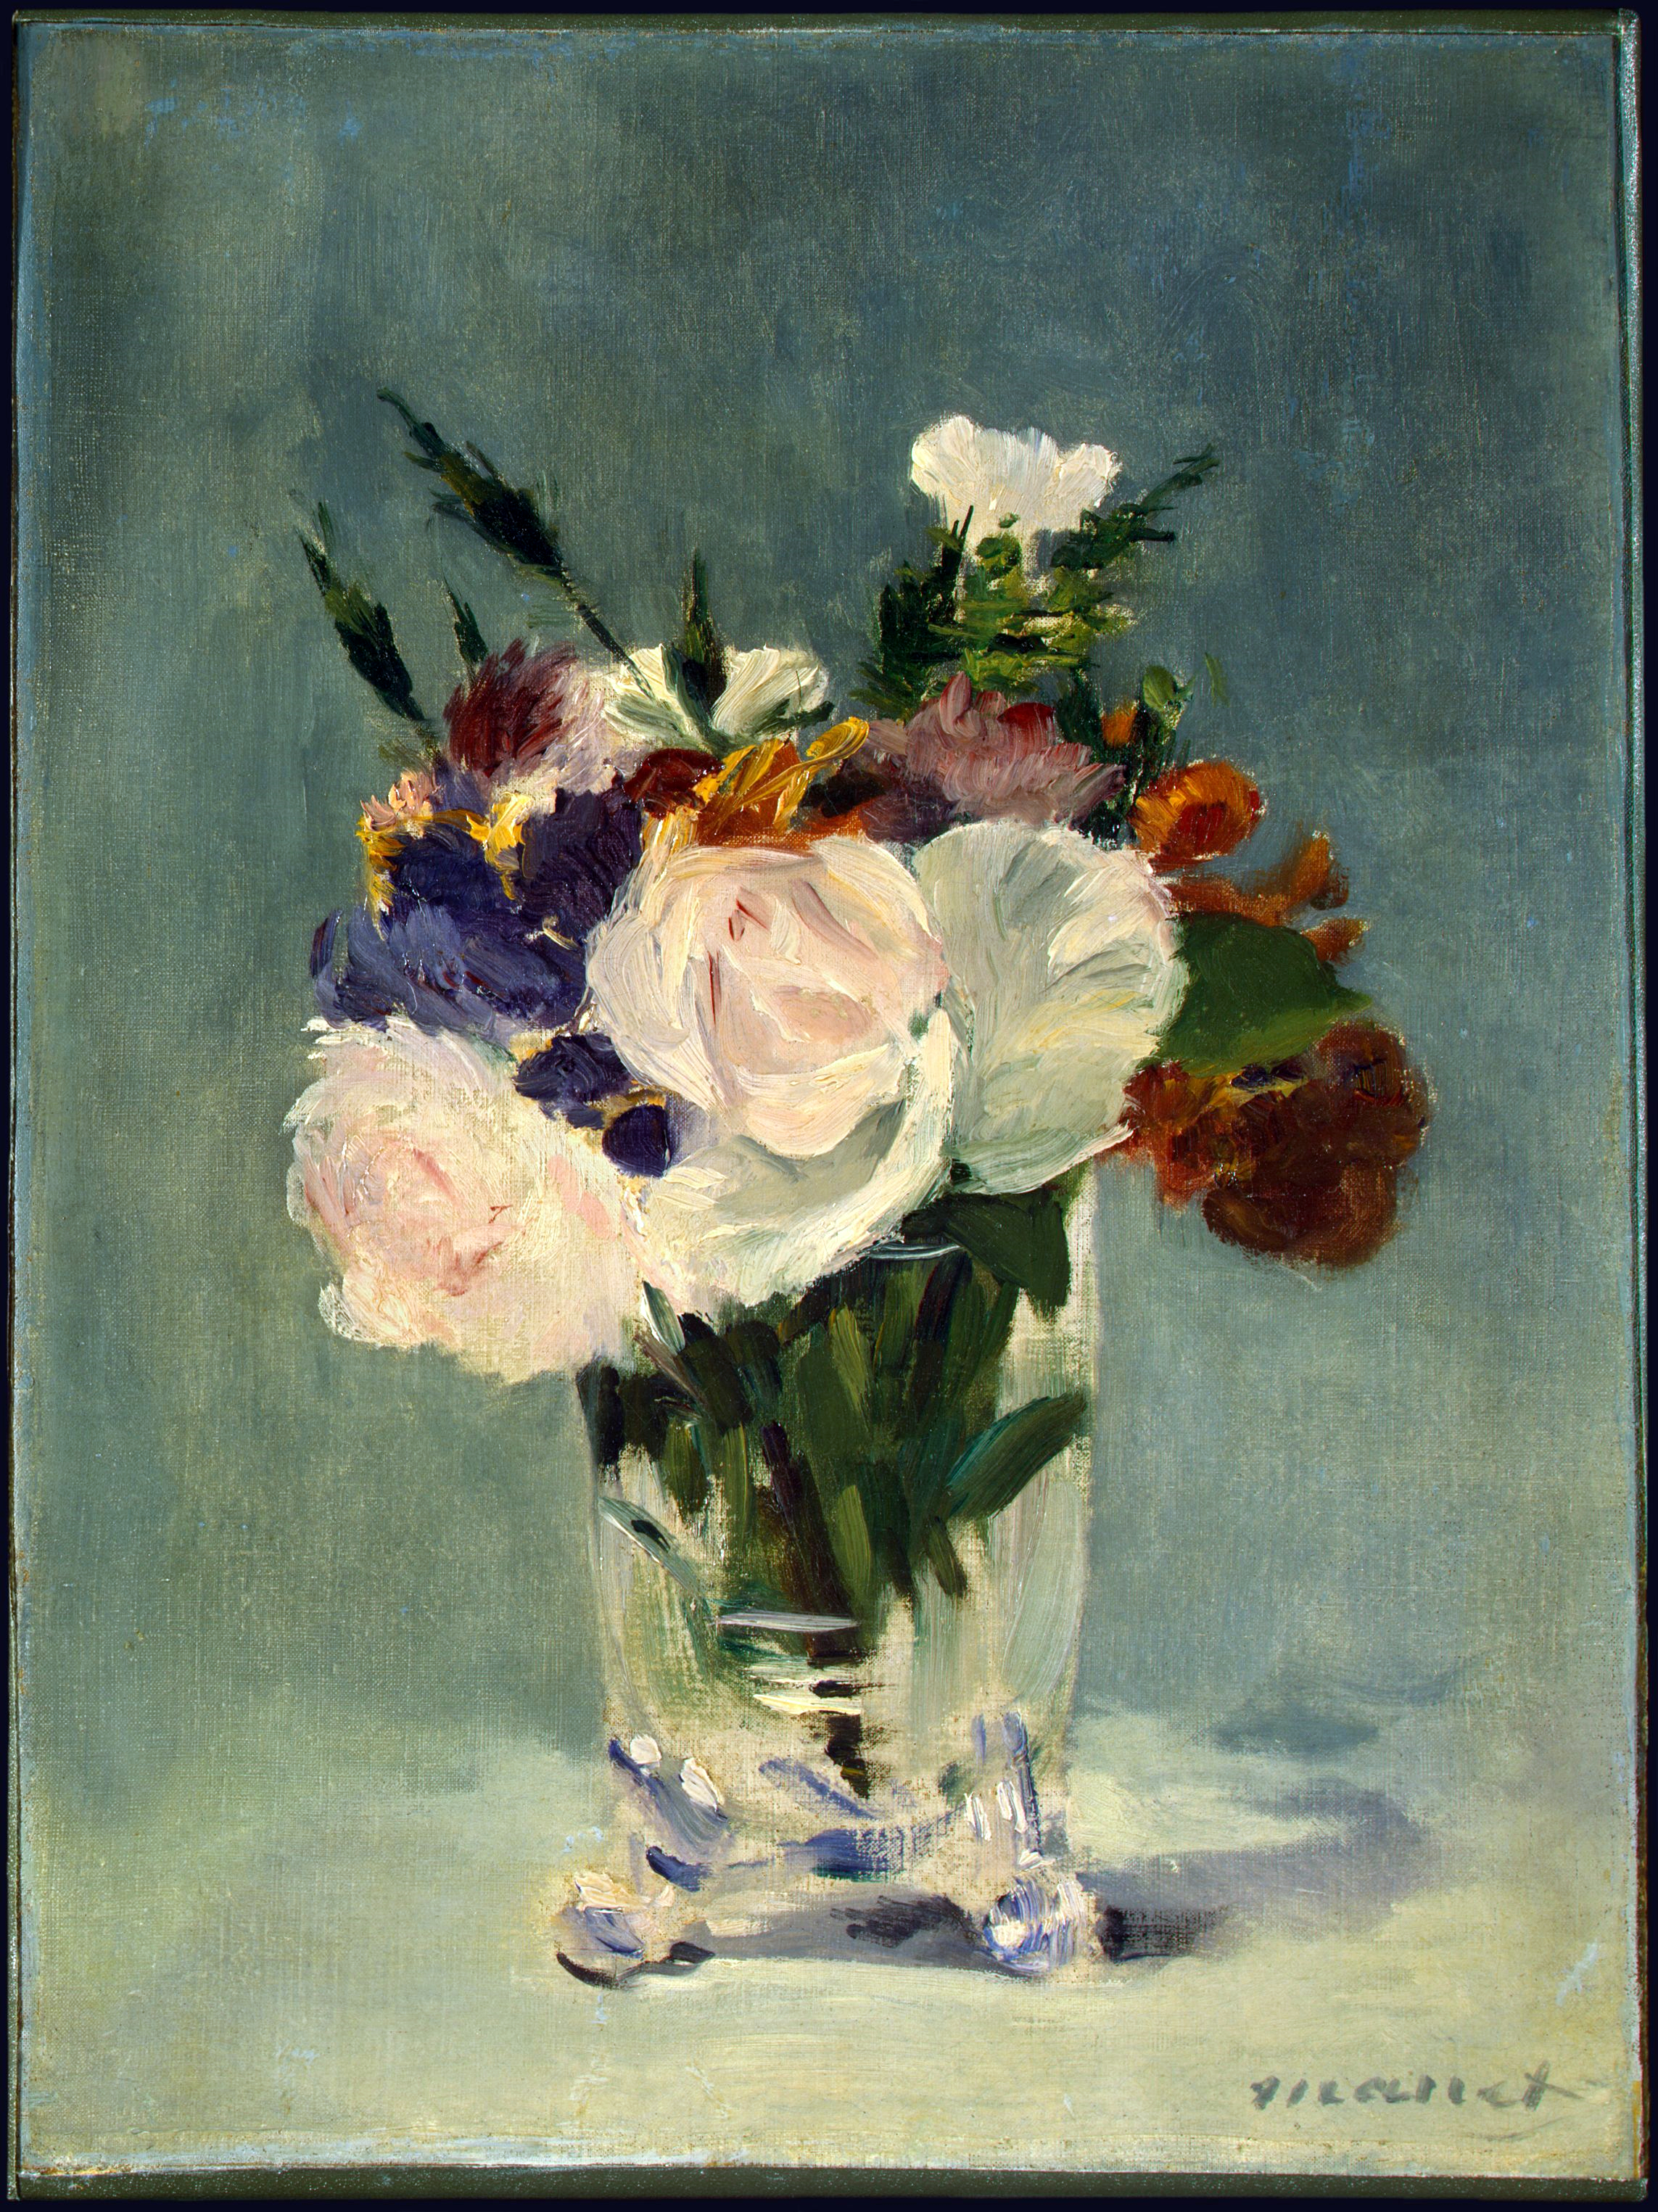 Kwiaty w kryształowym wazonie by Édouard Manet - ok. 1882 r. - 32,7 × 24,5 cm 